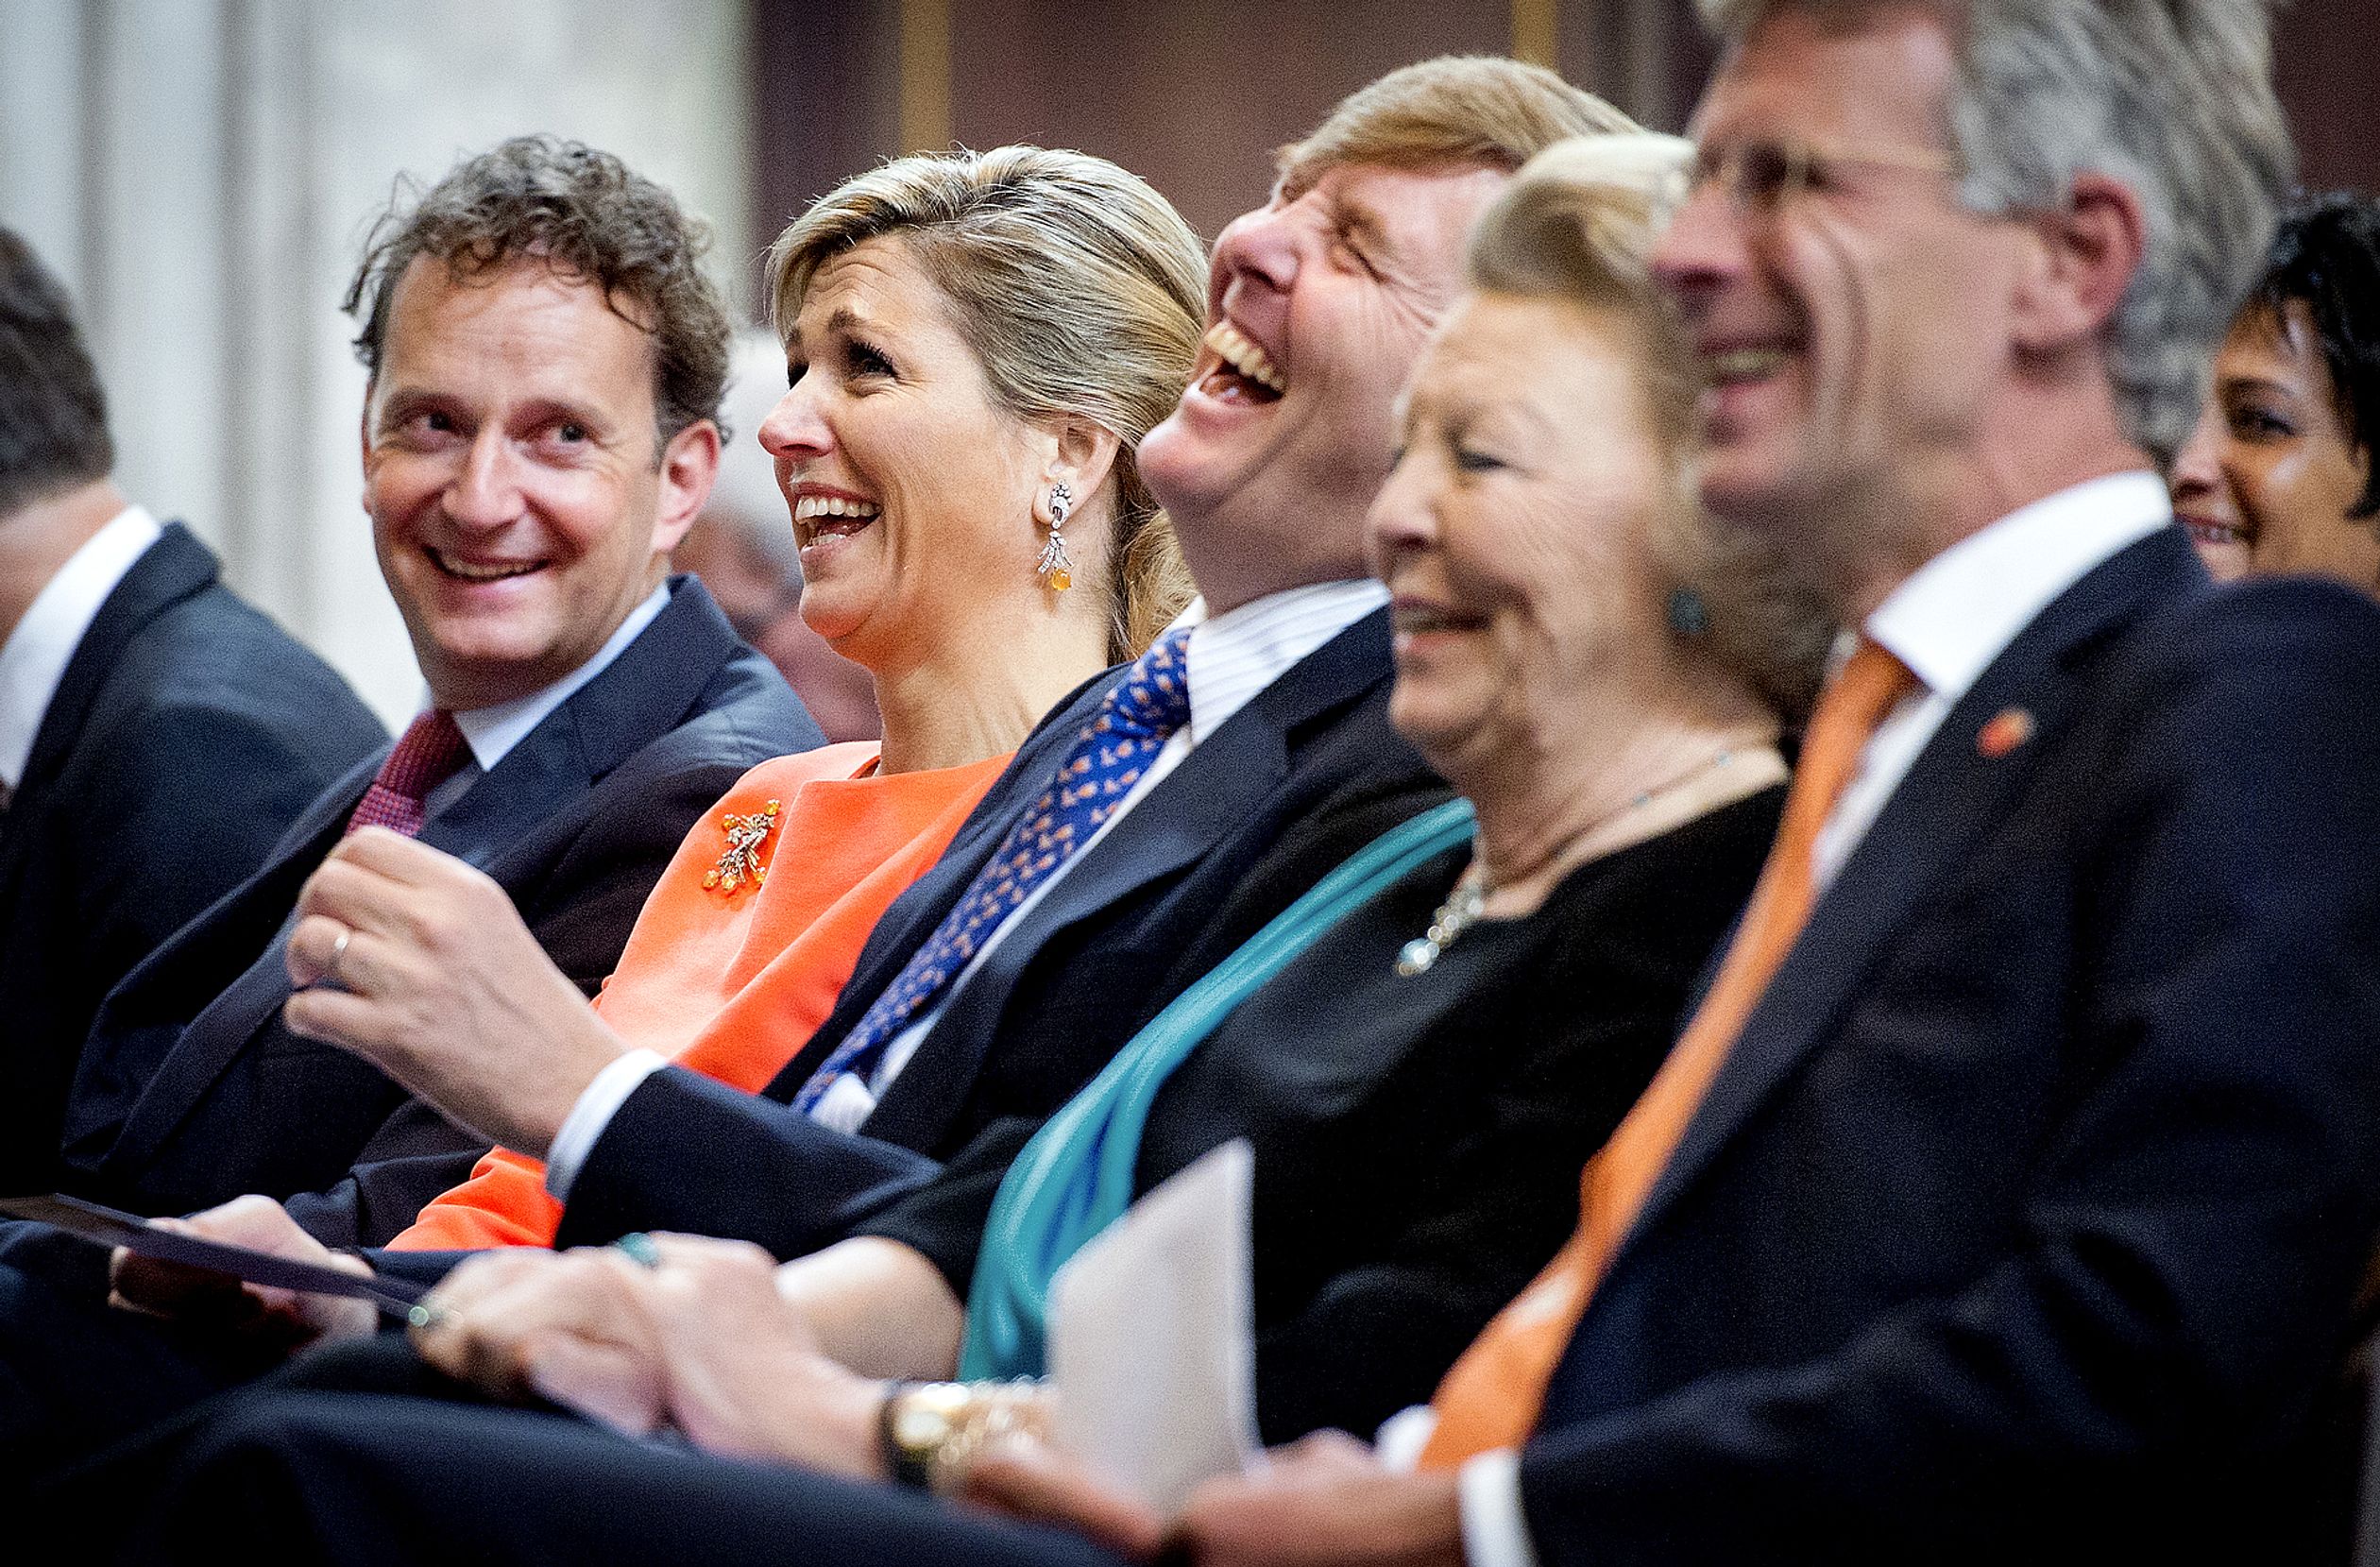 Koningin Máxima, koning Willem-Alexander en prinses Beatrix schateren tijdens de uitreiking van de